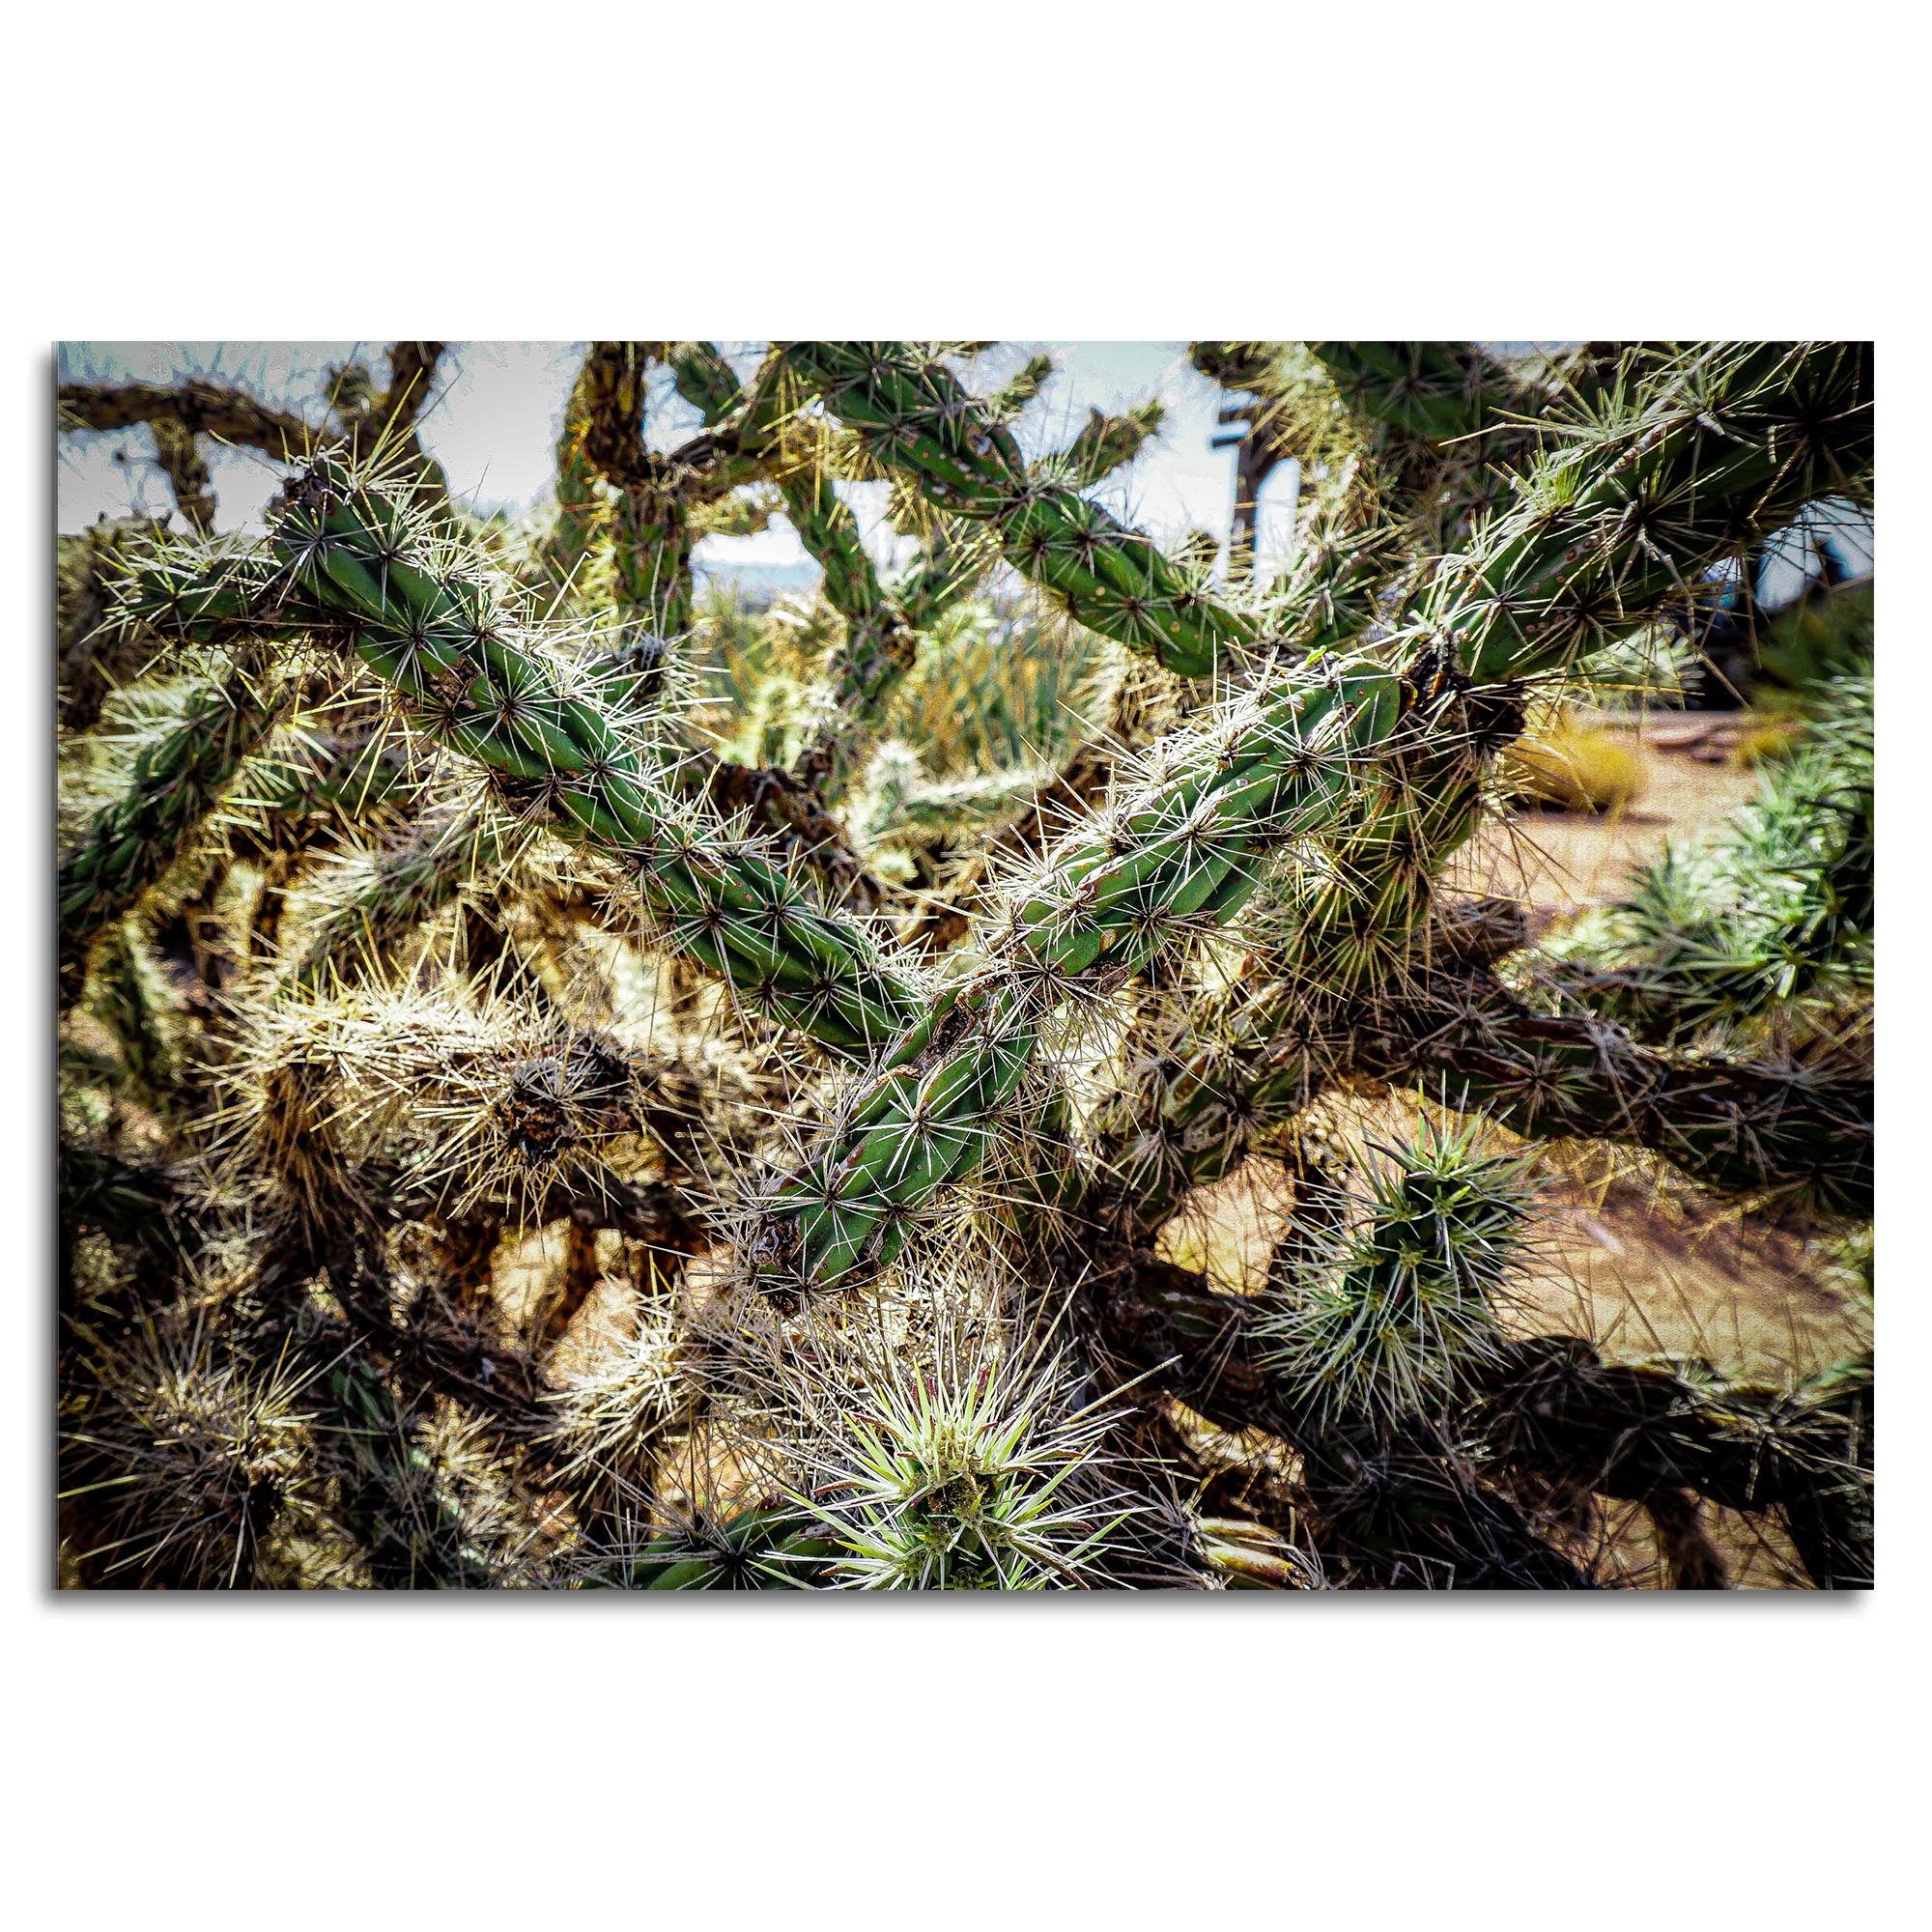 Adam Utz 'Cholla Cactus' 32in x 22in Contemporary Style Desert Art